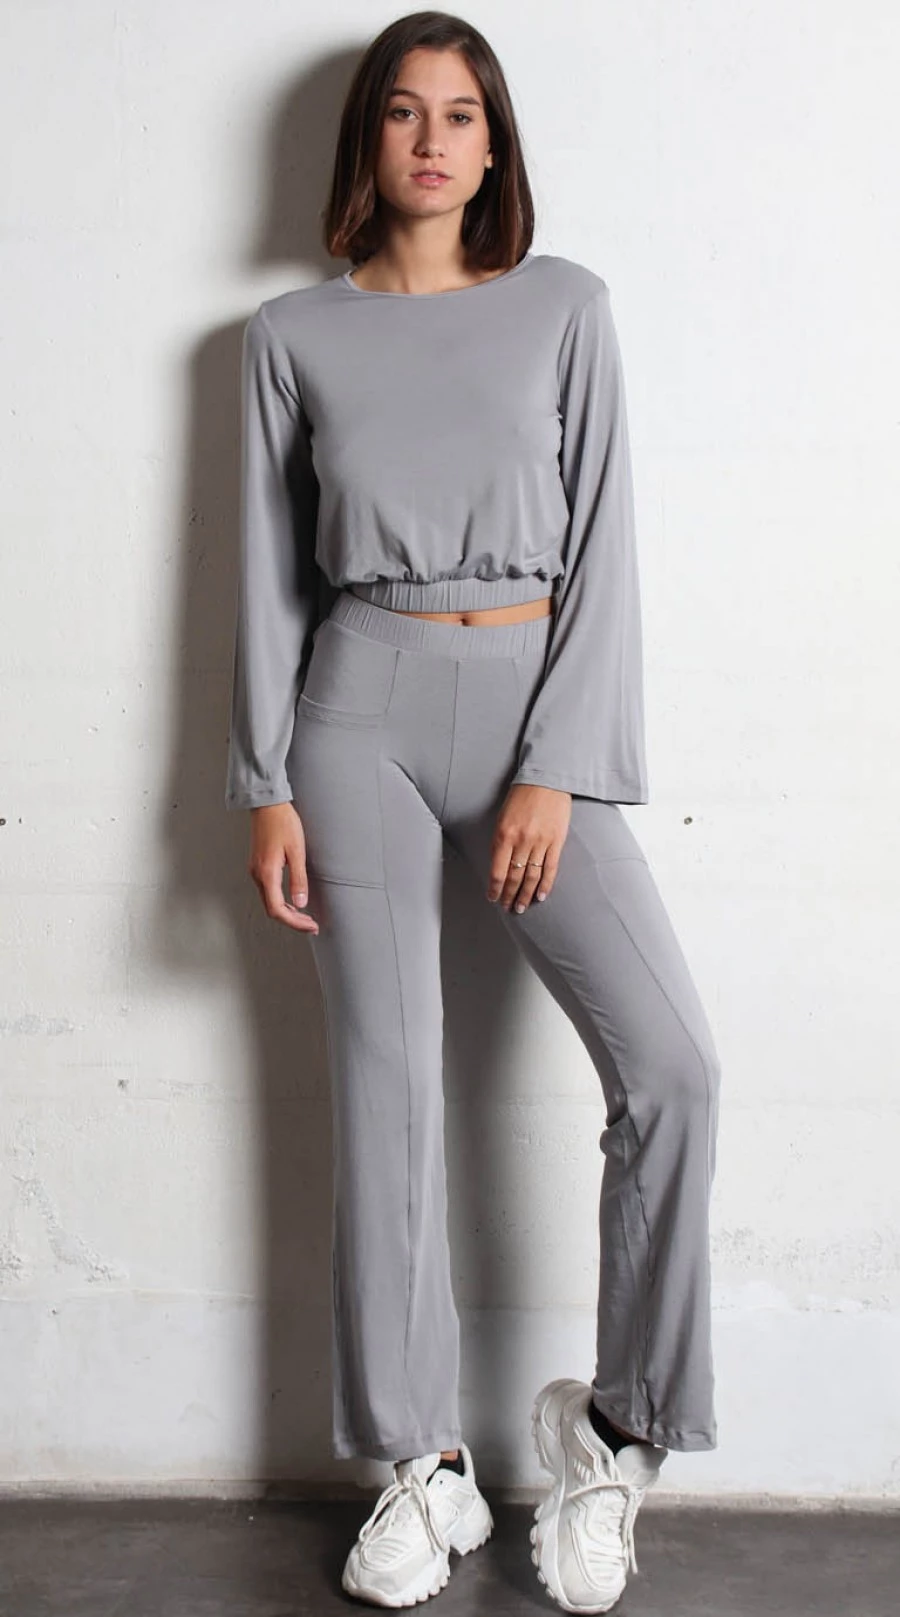 Women's pyjama pants: jersey knit inner garment